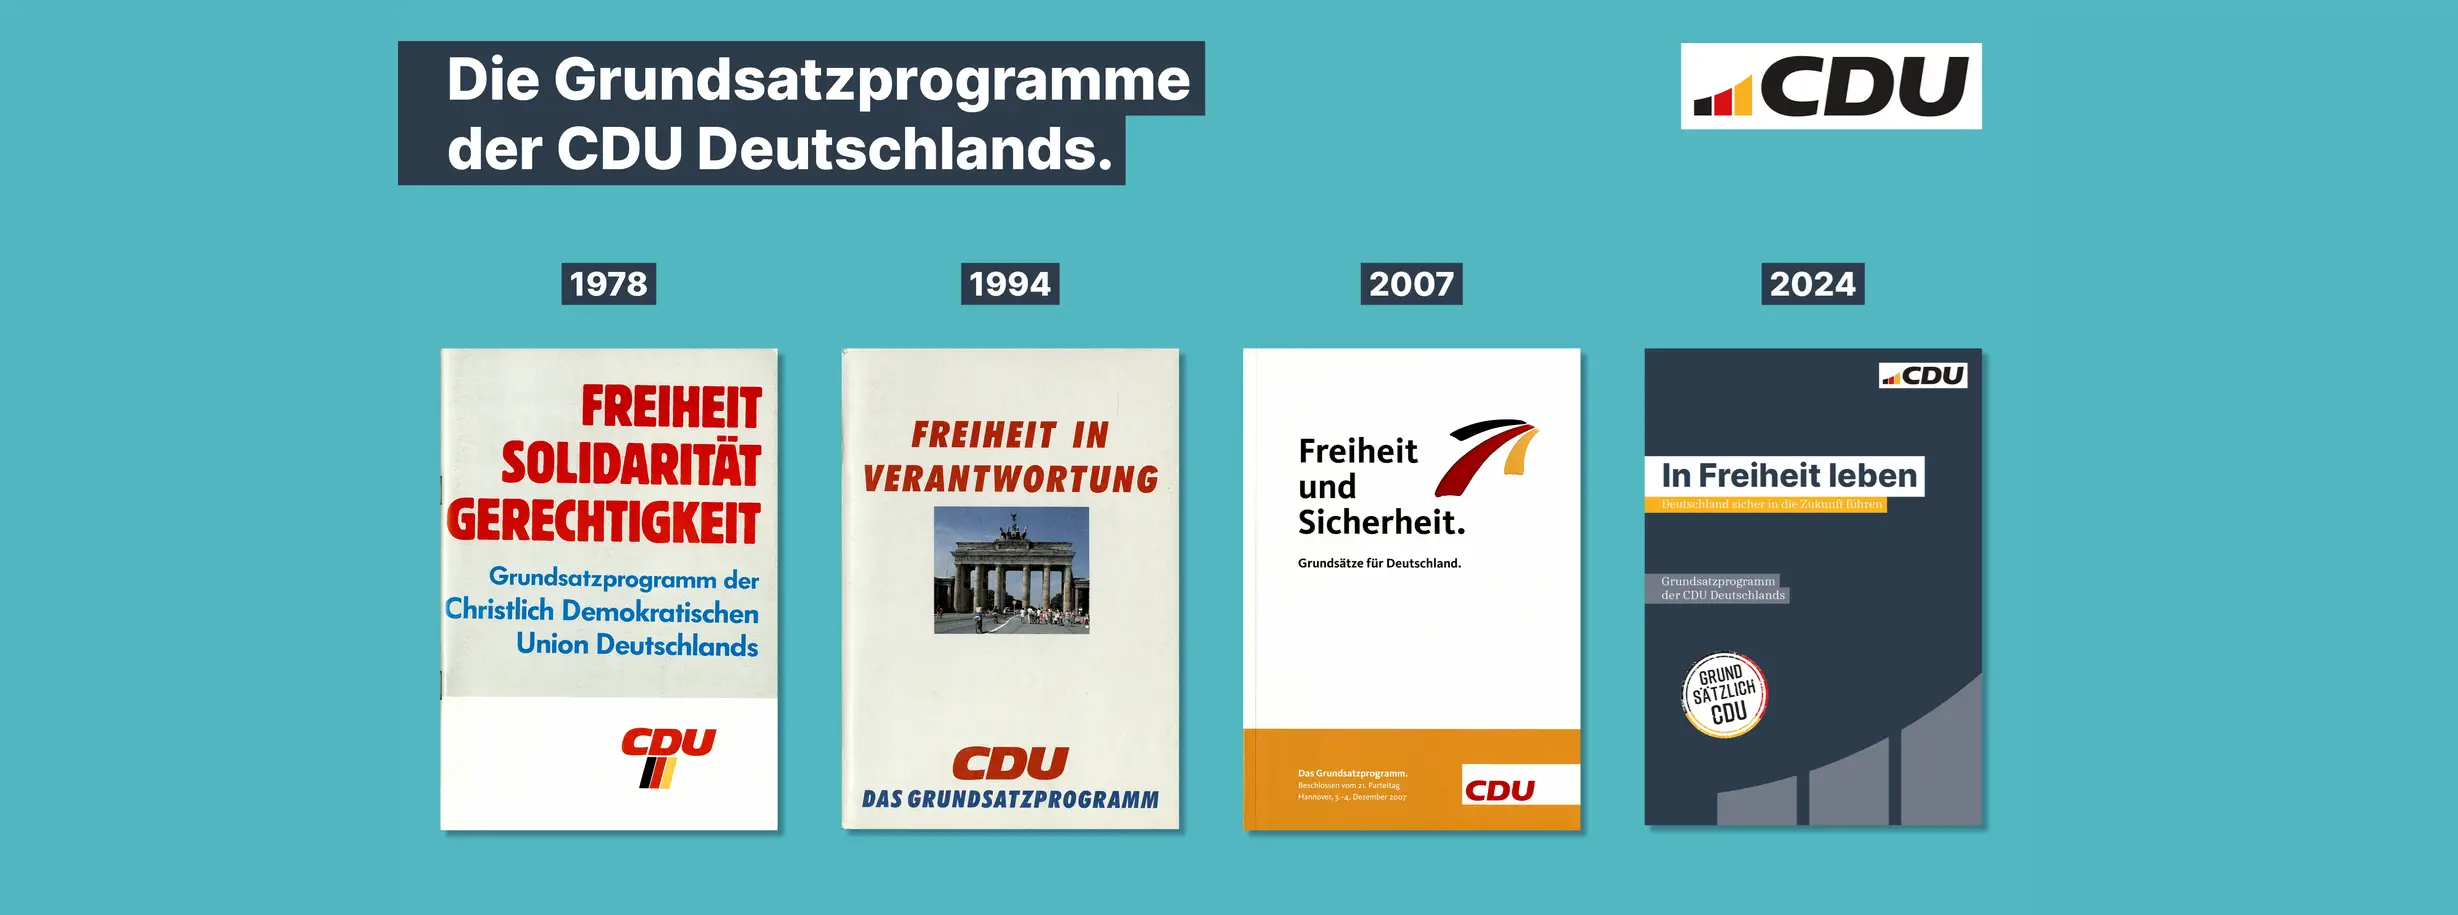 cdu-grüner Hintergrund, CDU Logo, Text: Die Grundsatzprogramme der CDU Deutschlands. Darunter die 4 Cover der Grundsatzprogramme von 1978, 1994, 2007 und 2024